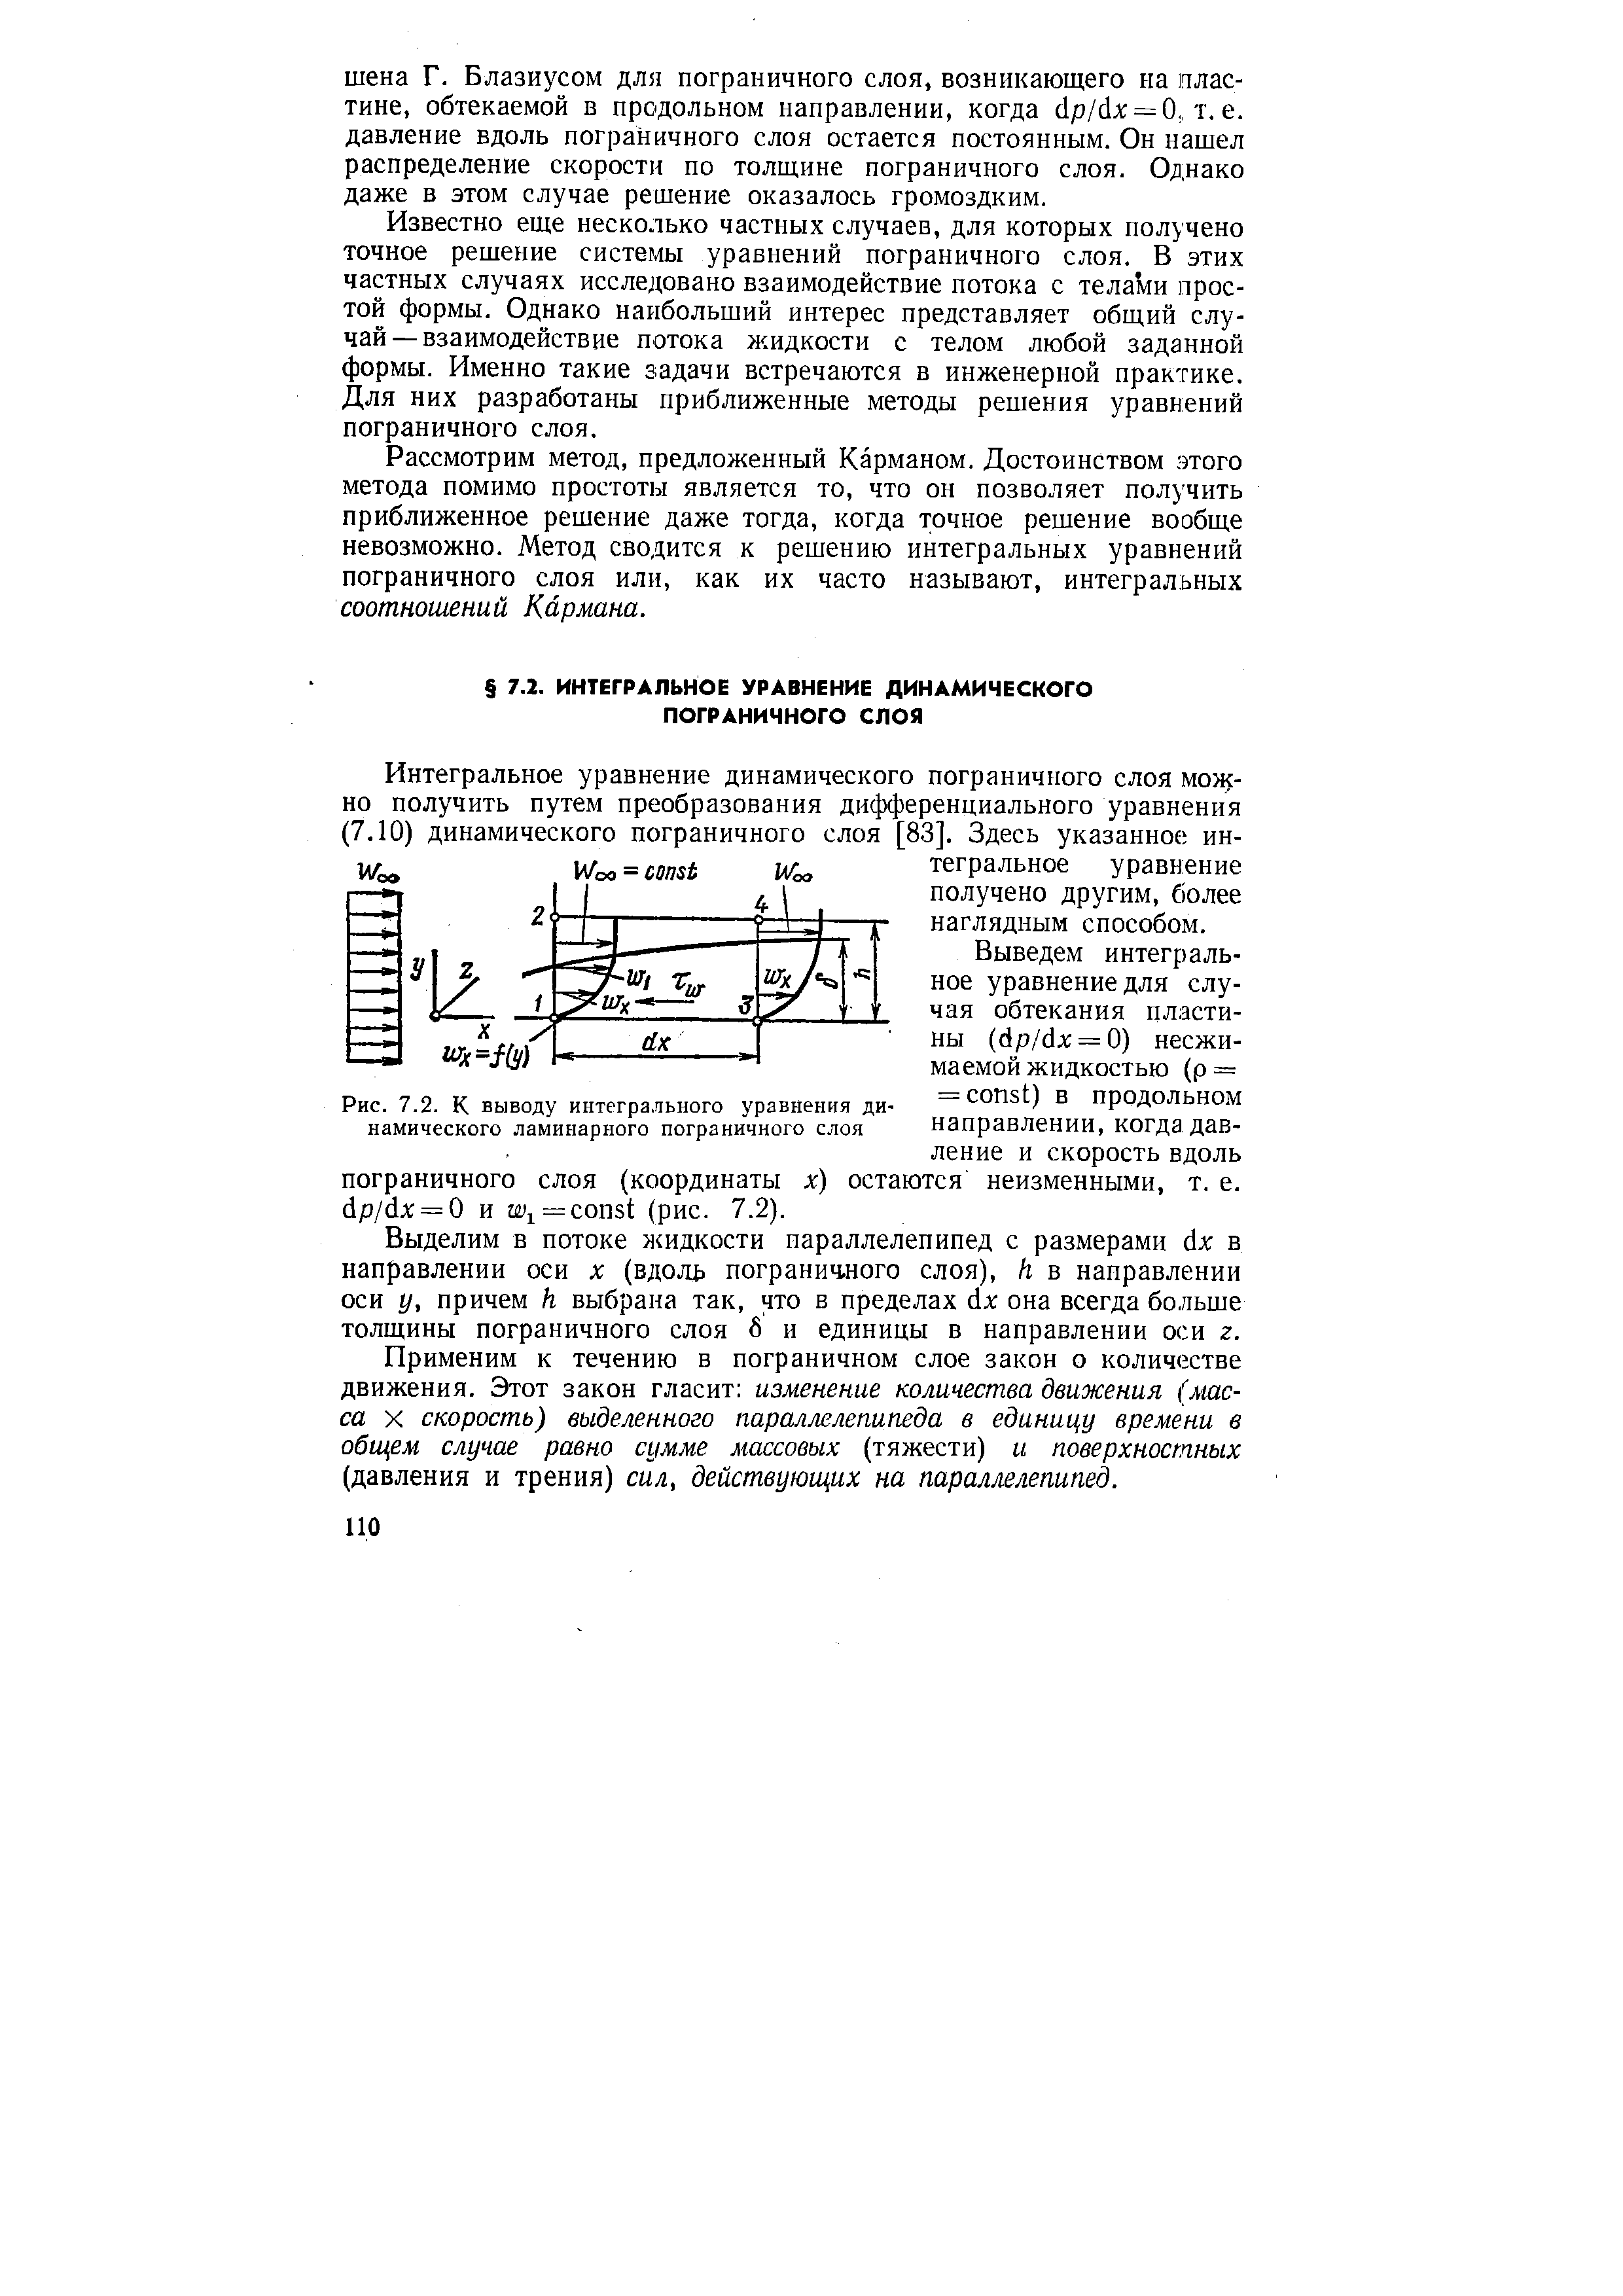 Рис. 7.2. К выводу интегрального уравнения динамического ламинарного пограничного слоя
